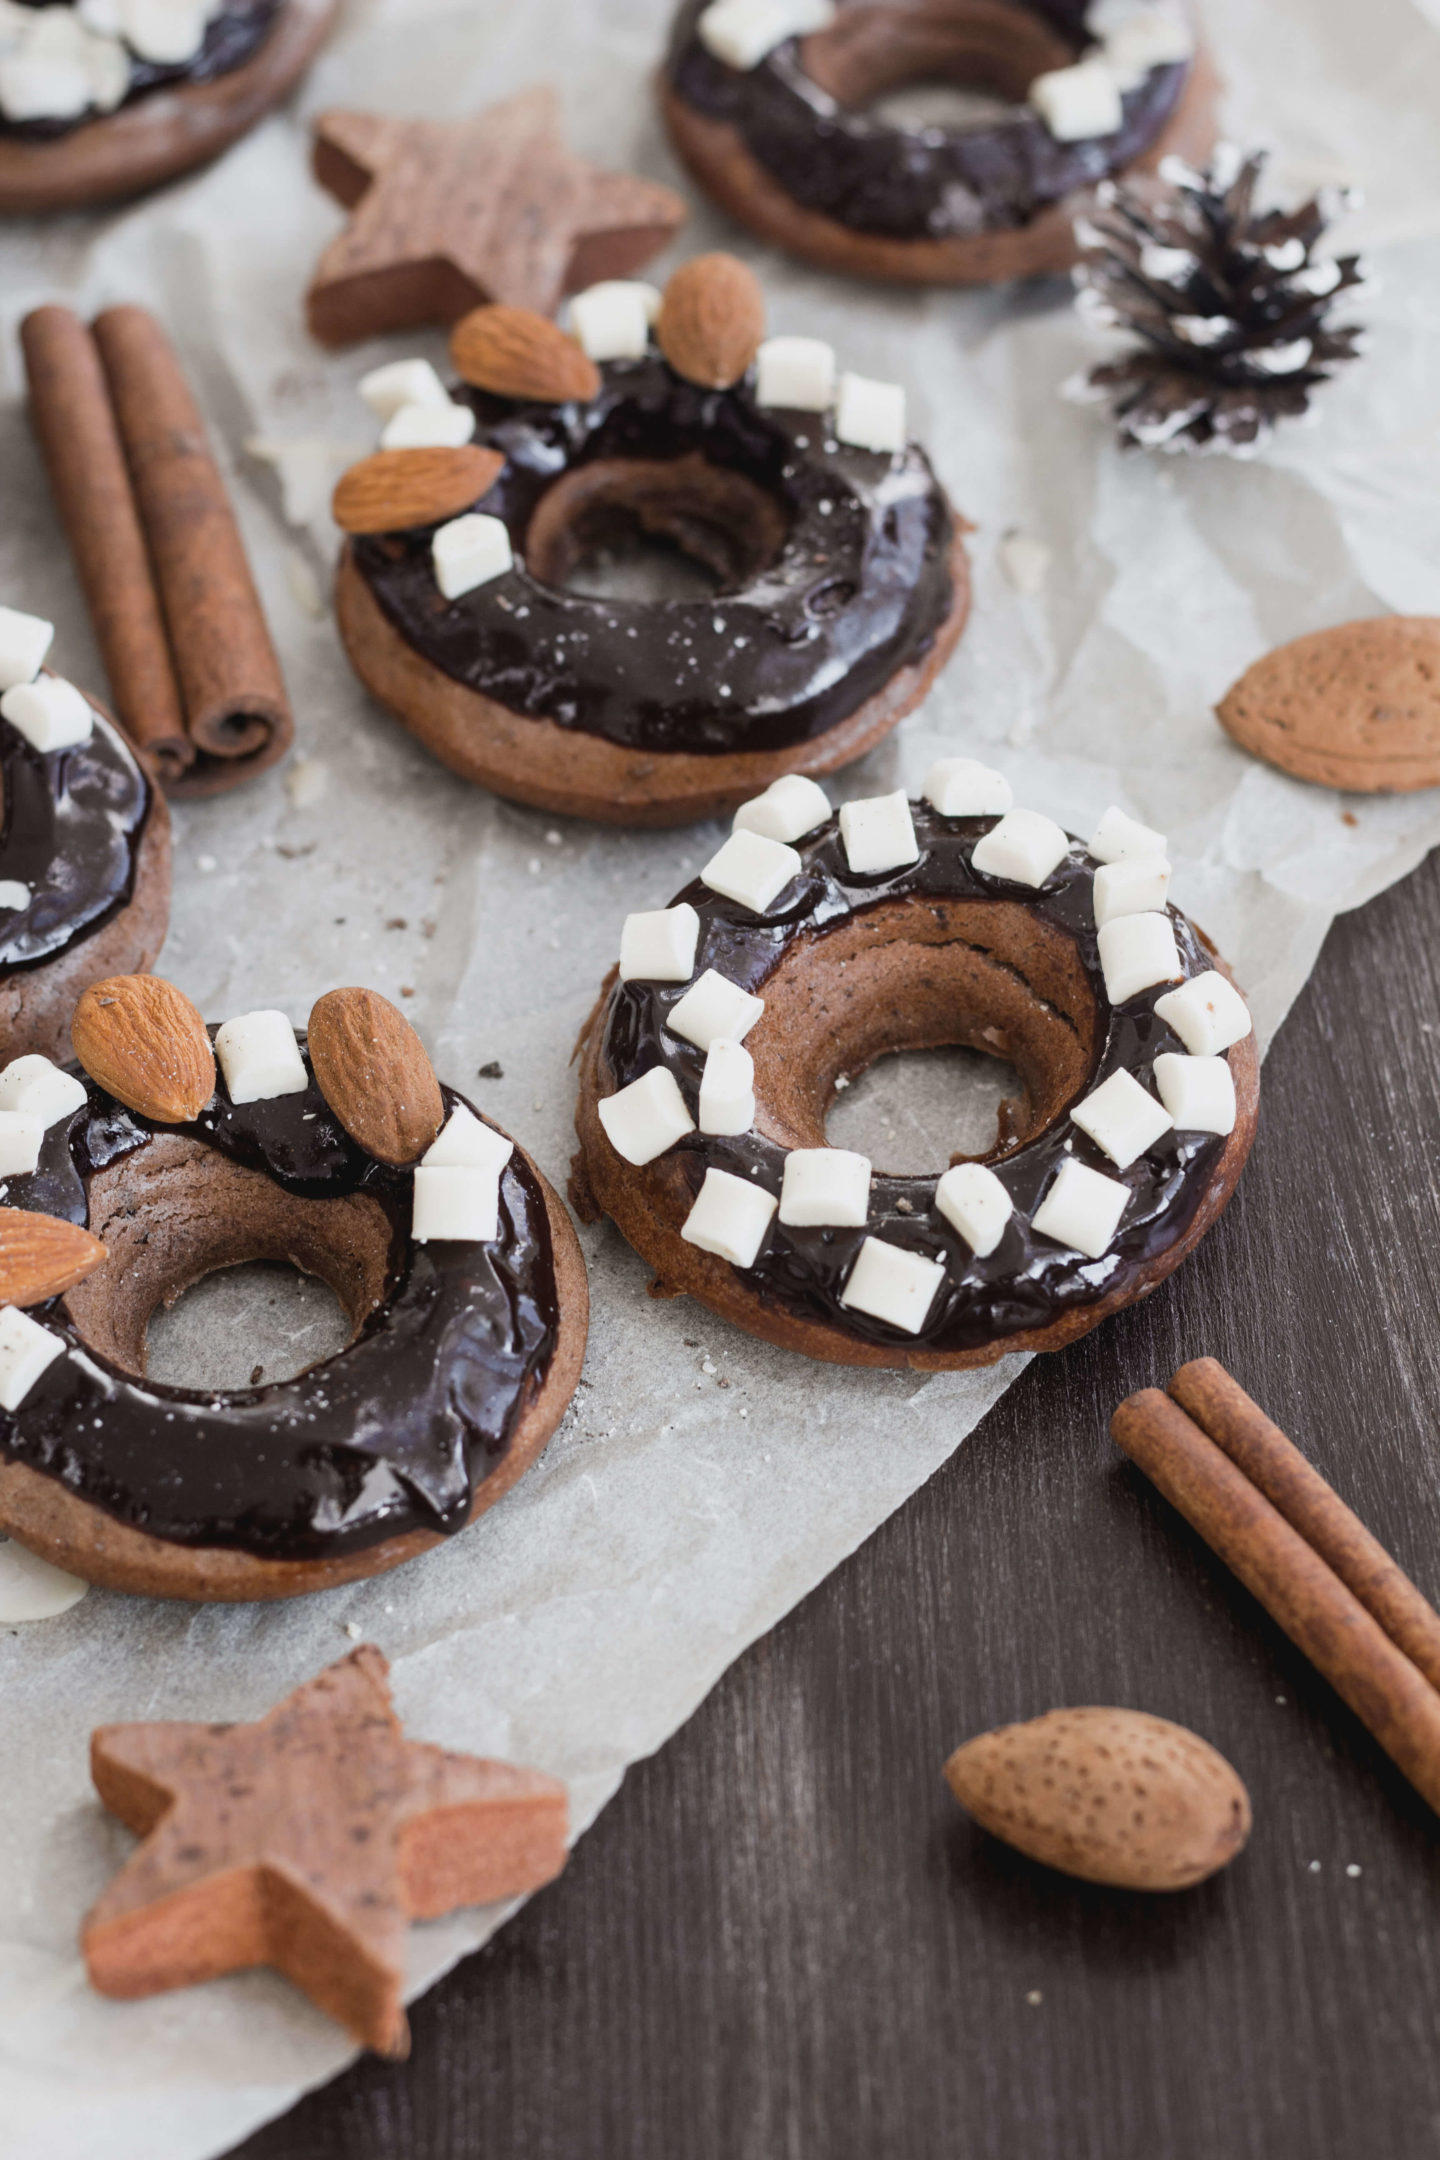 Vegane Donuts-ohne Hefe-Homemade-Winter- Soulfood- Schokolade- Zuckerfrei- Mit Zucker- Zimt- Vanille-Dein HomeSpa – Food & Lifestyleblog aus dem Mostviertel